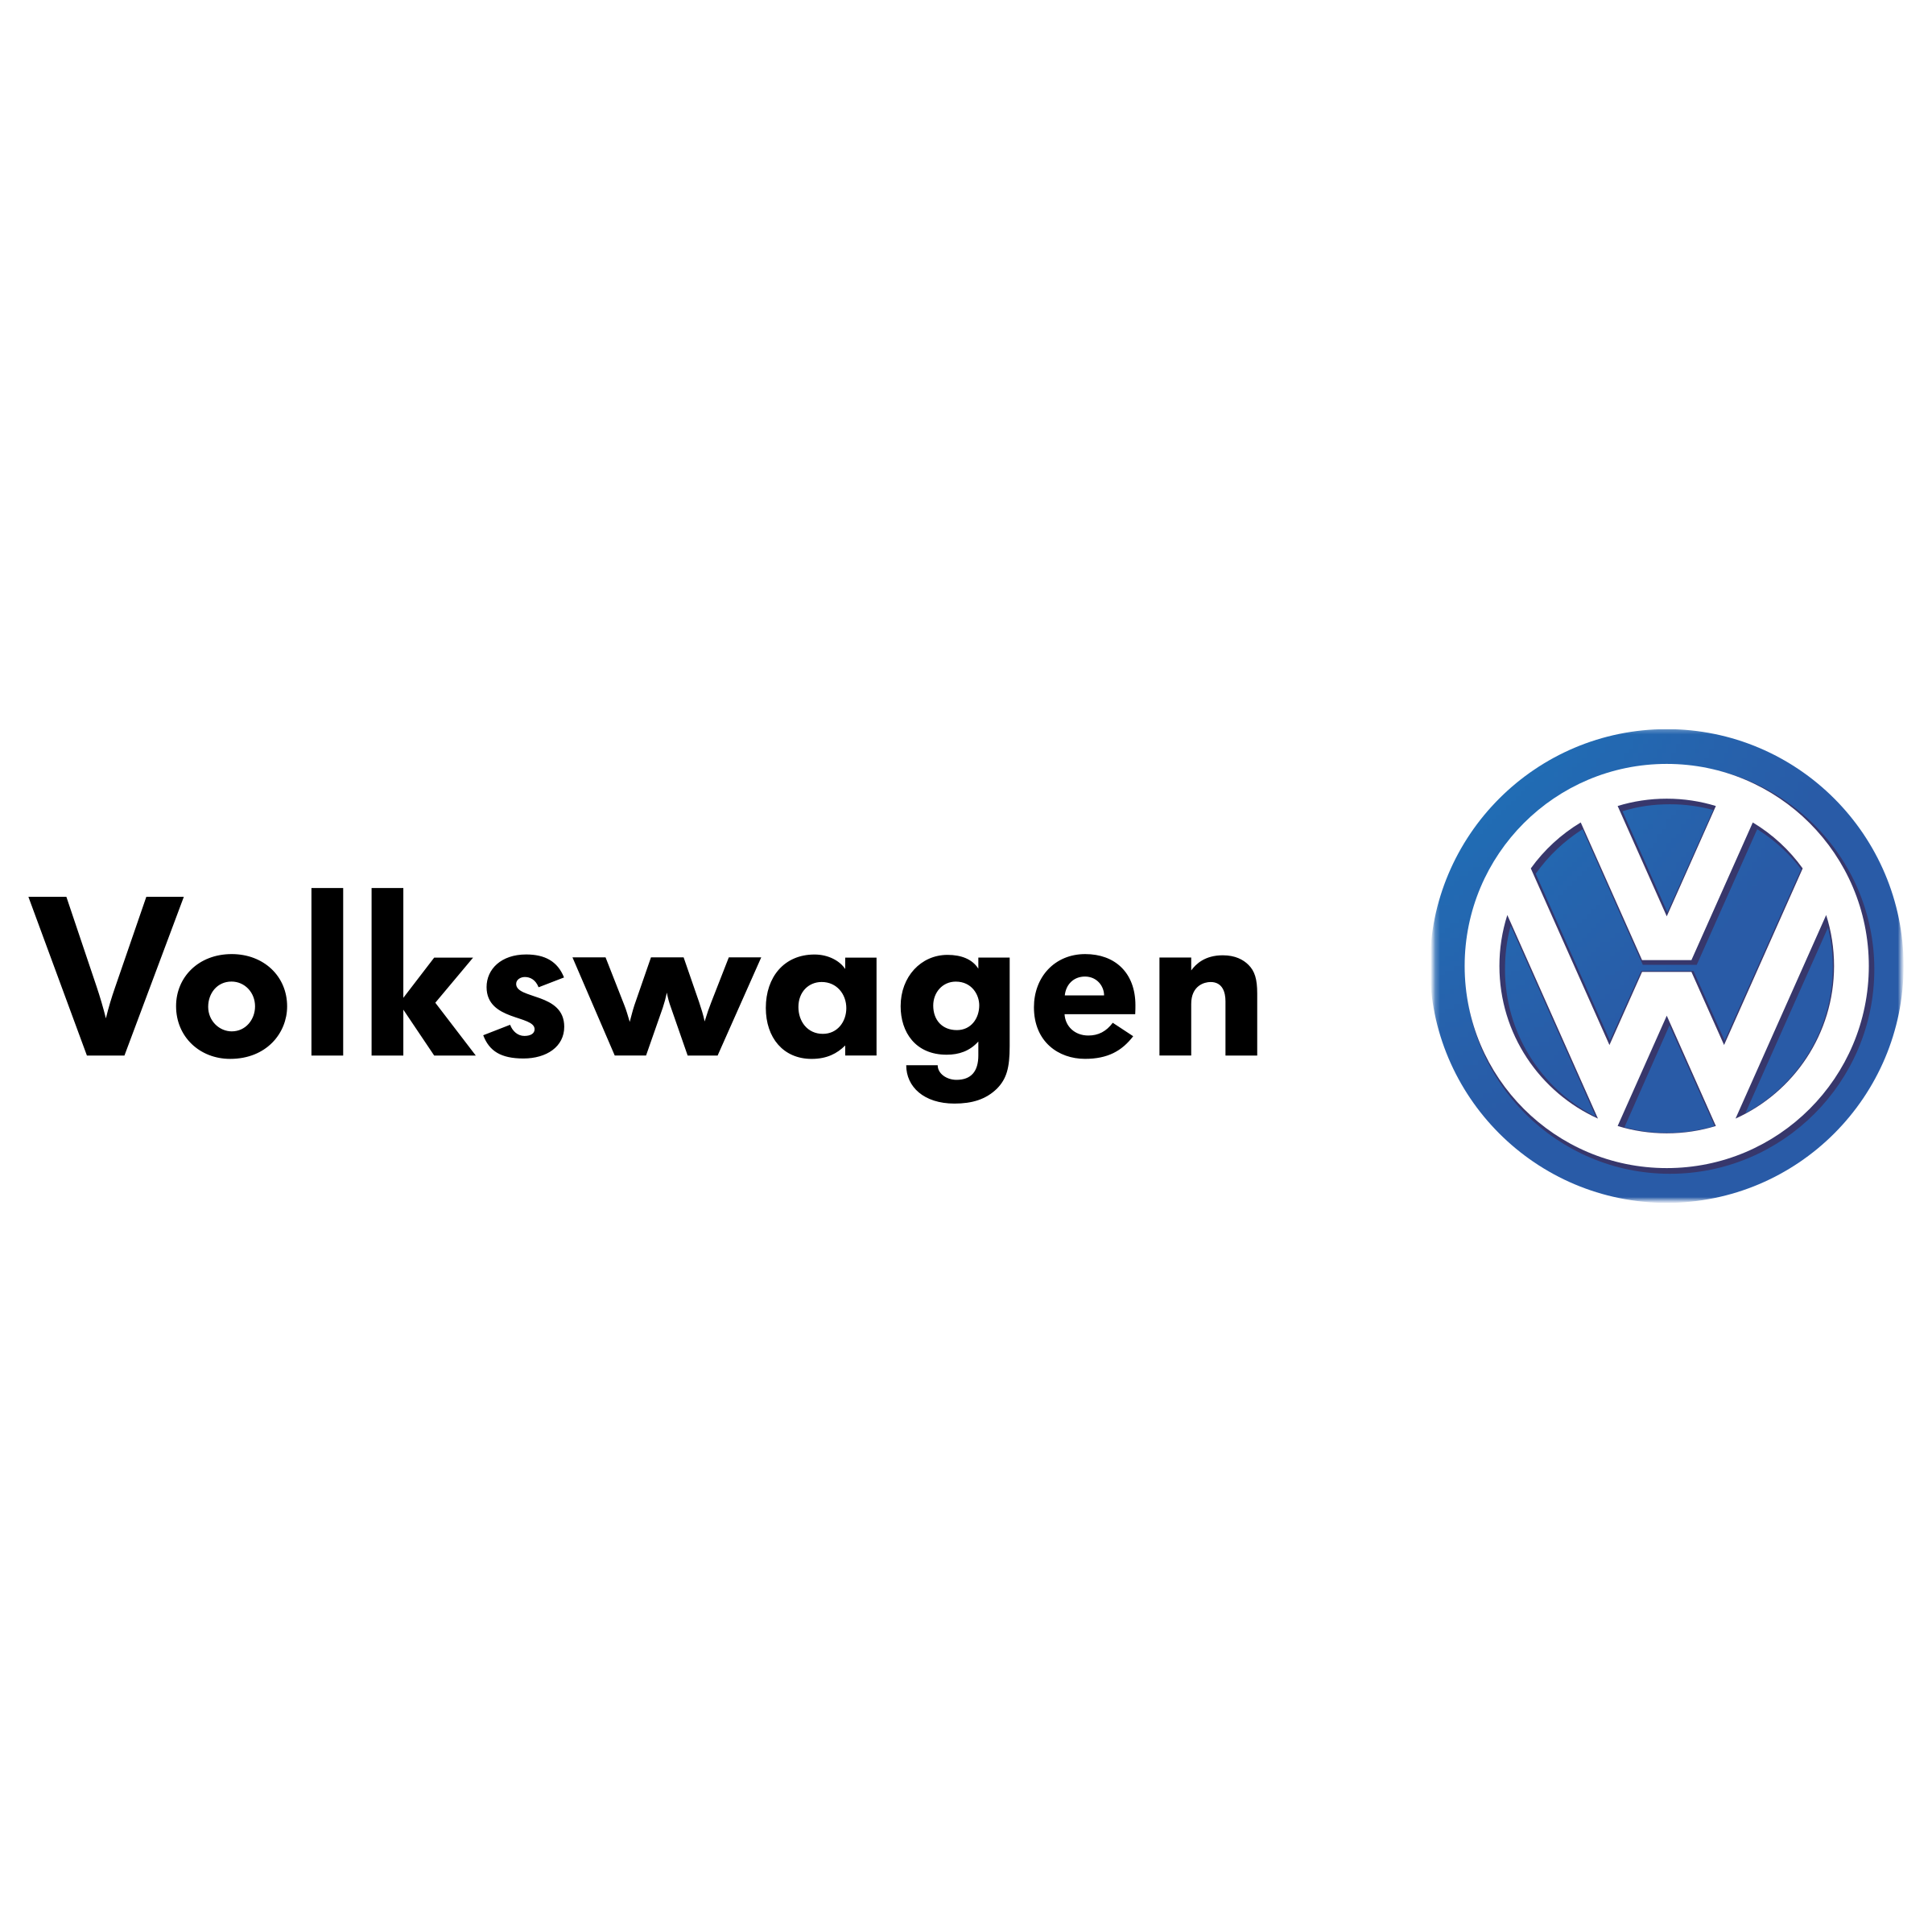 Volkswagen logo PNG image haute qualité image